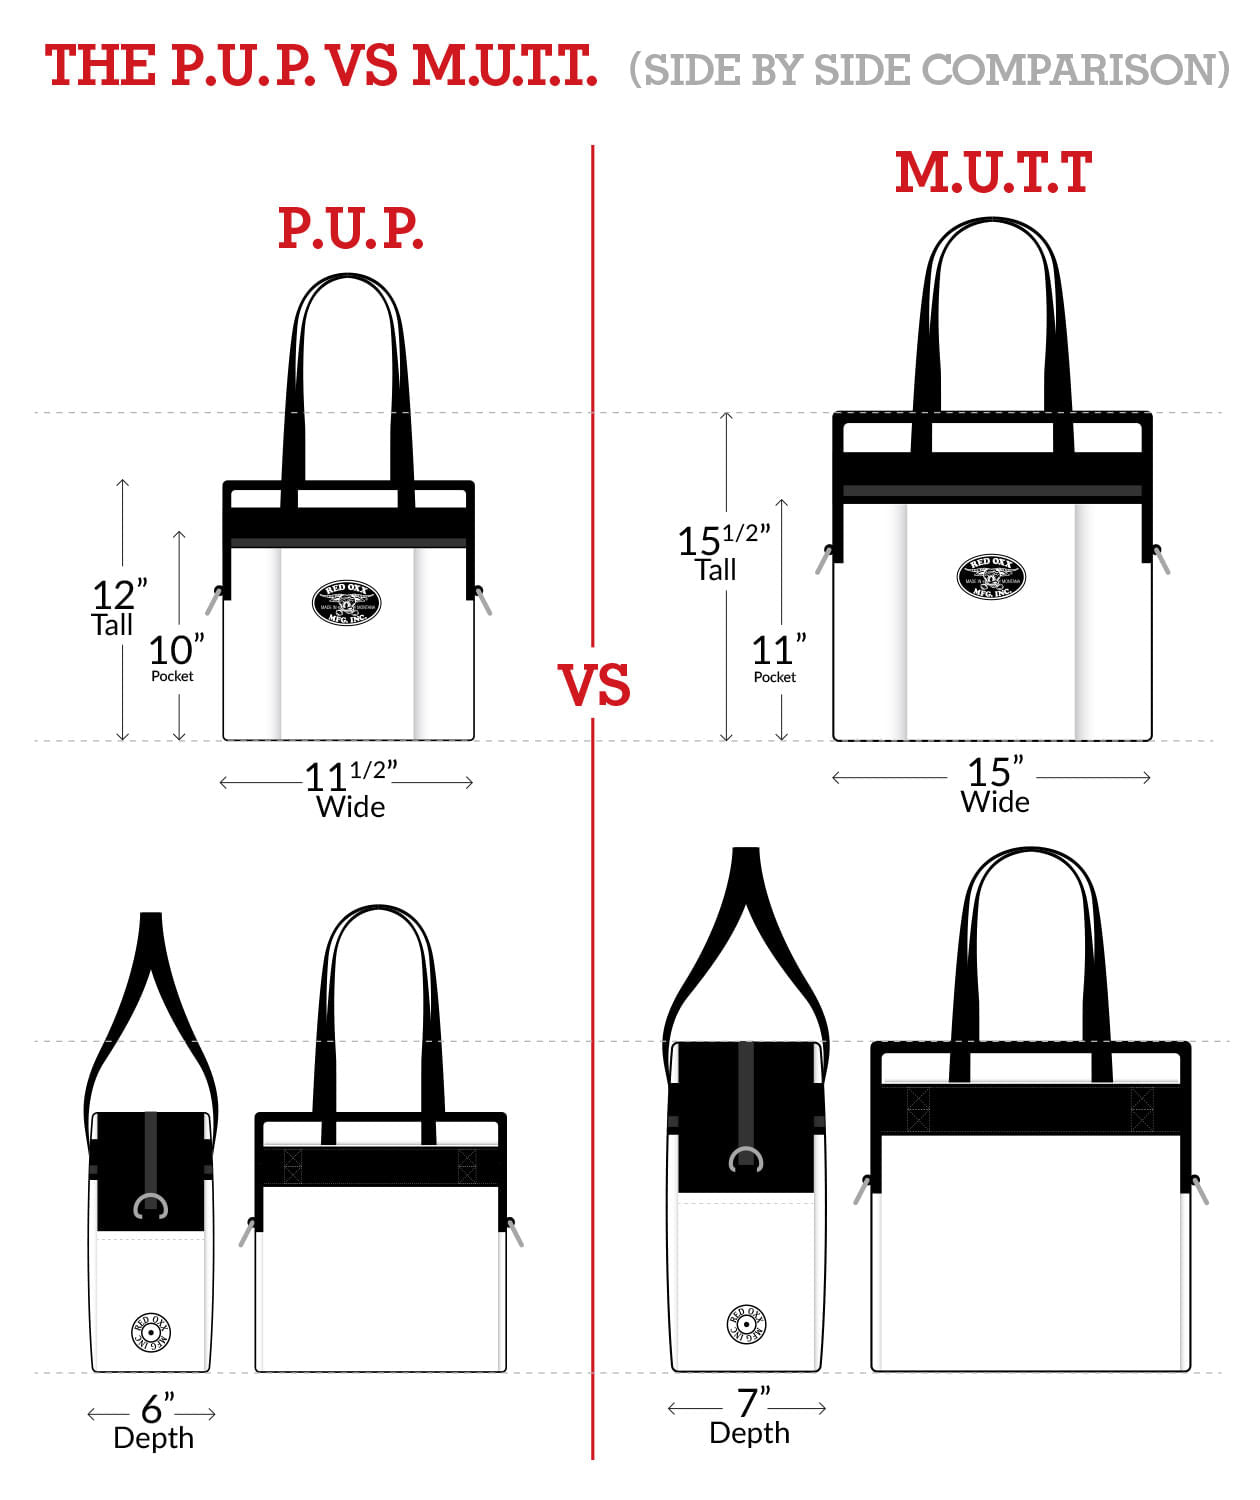 Measurement comparison PUP vs MUTT.  